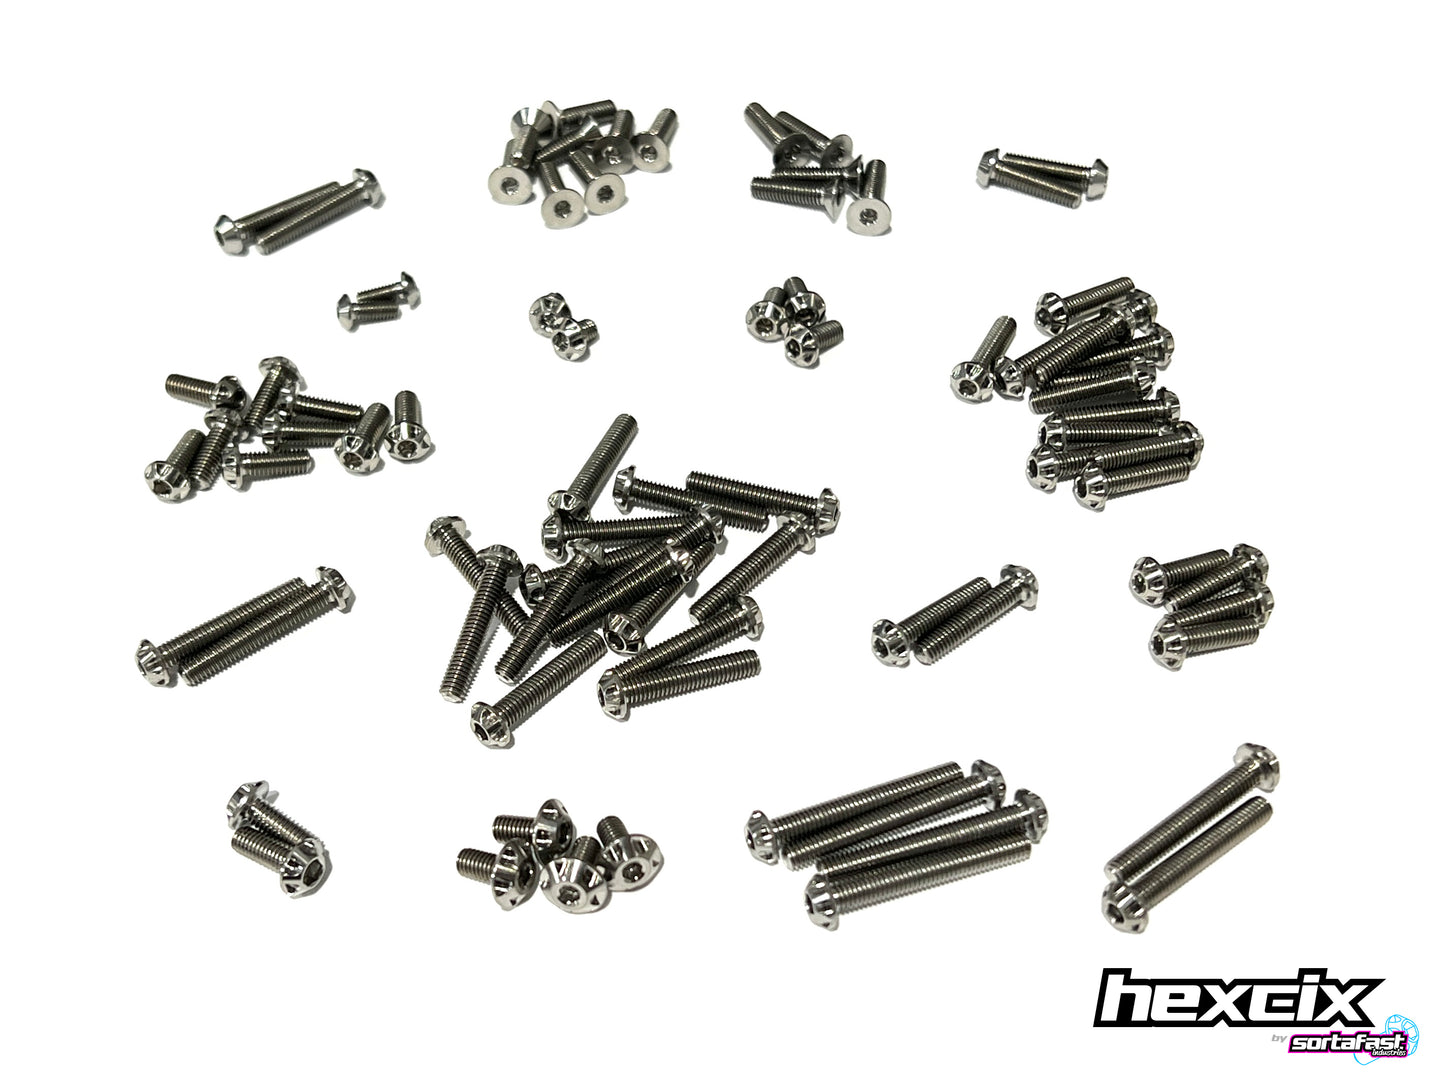 Sortafast Titanium Screw Kit - Team Associated RC10B7 Topside - Hexcix Edition